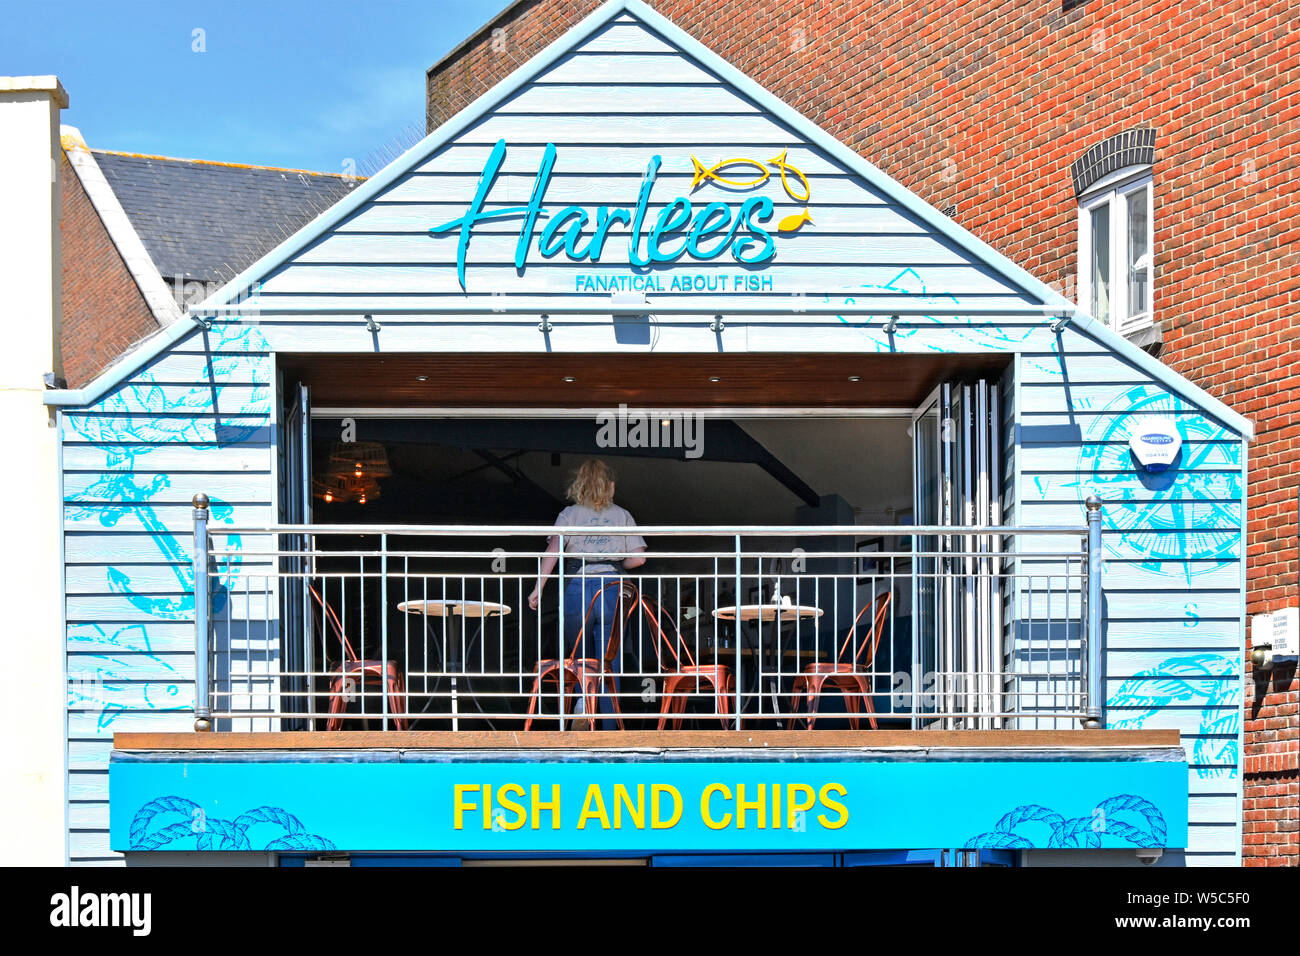 Fish and chips shop café Harlees Business au premier étage, restaurant avec balcon et serveuse en plein air, surplombant Poole Harbour Dorset Angleterre Banque D'Images